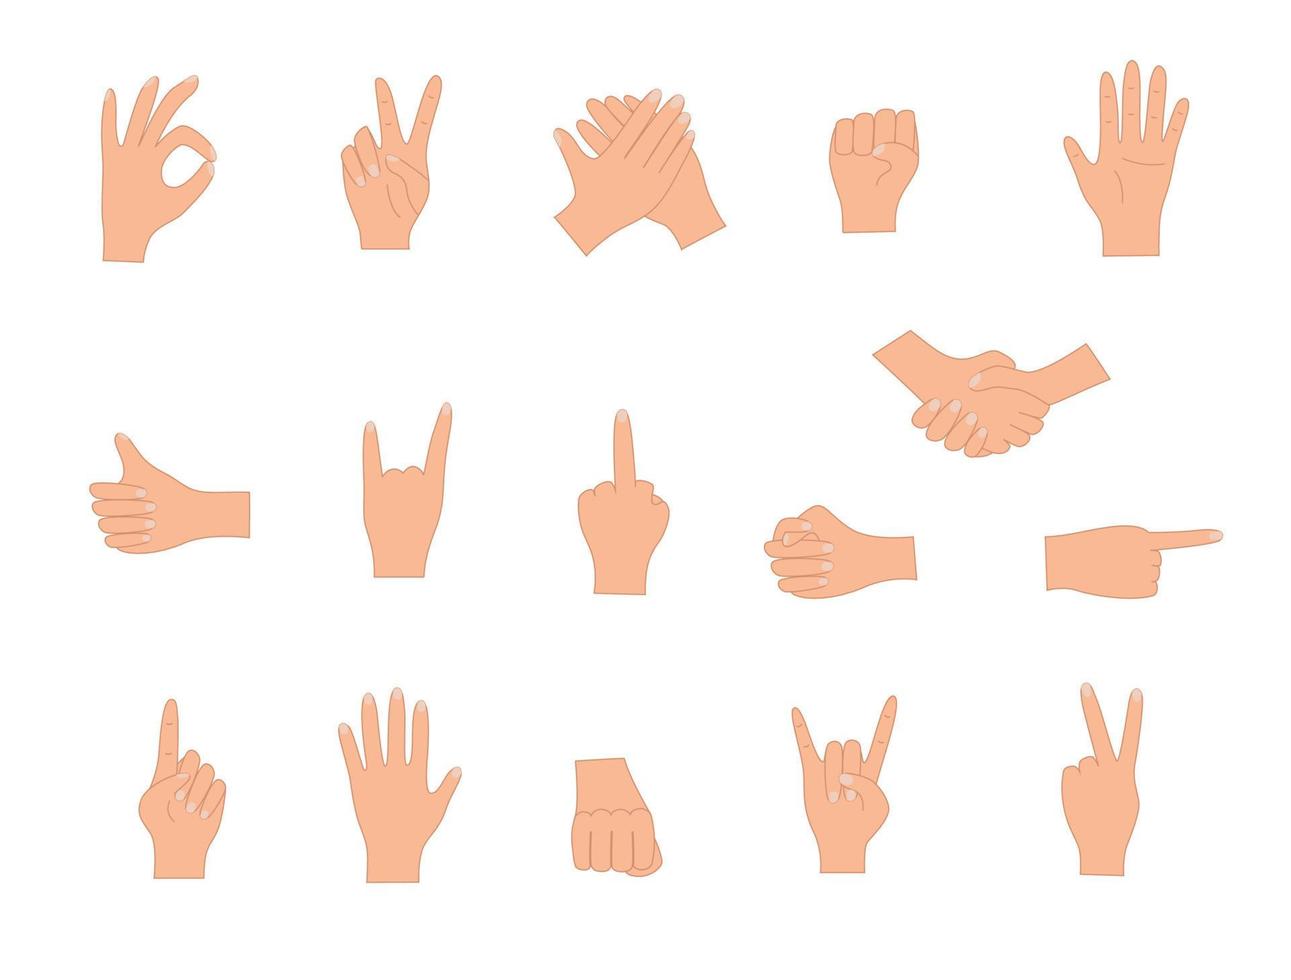 handgebaren, vector illustratie set iconen van verschillende handtekens.